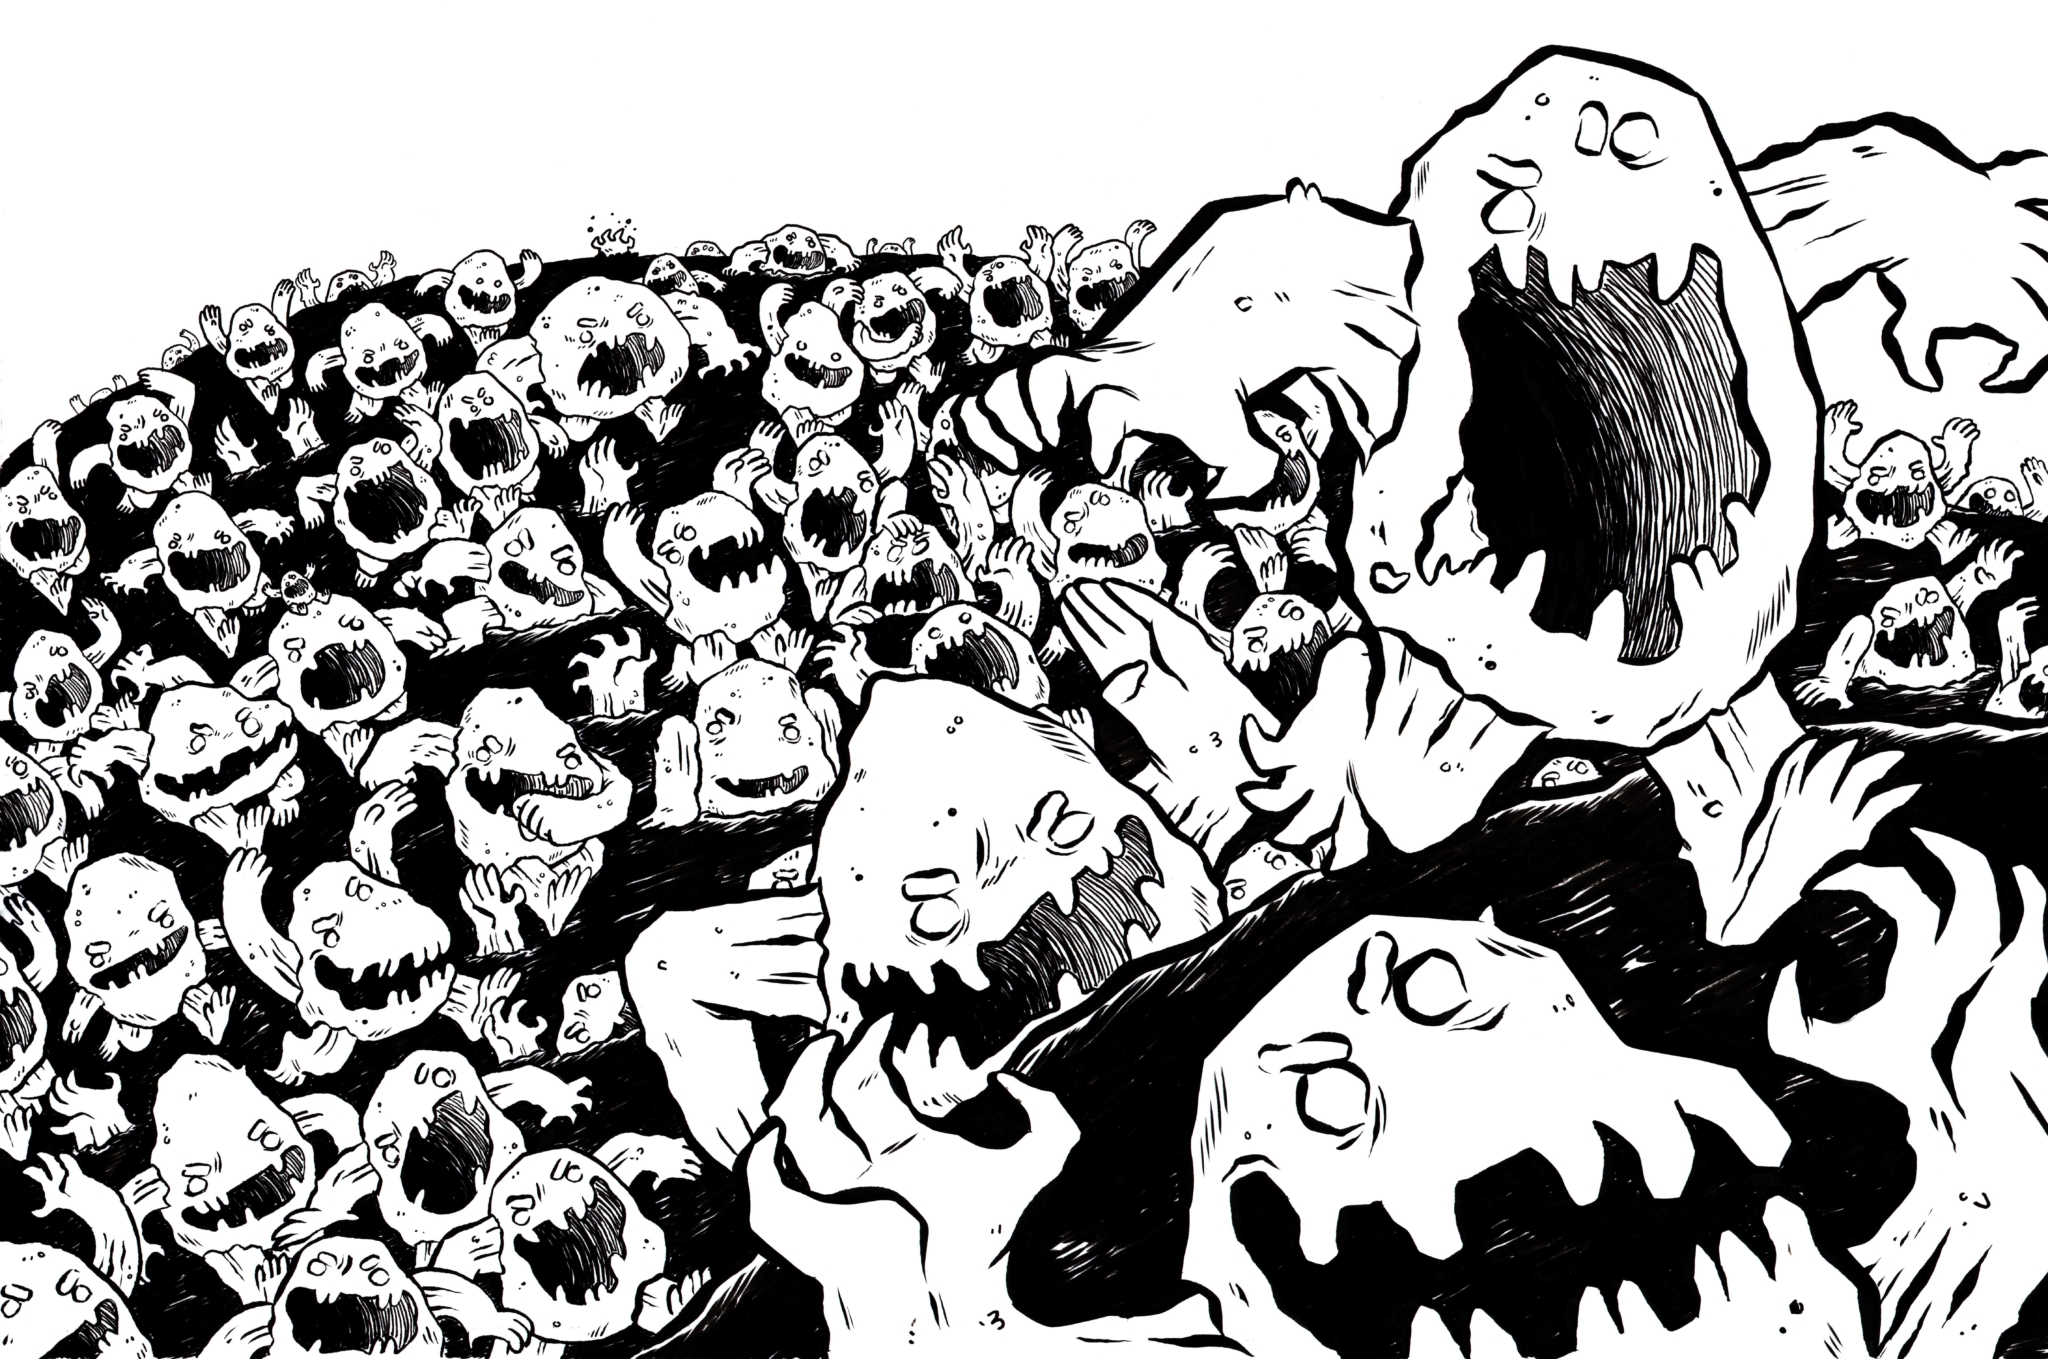 2D Rock Monster Hoard Black and White Illustration